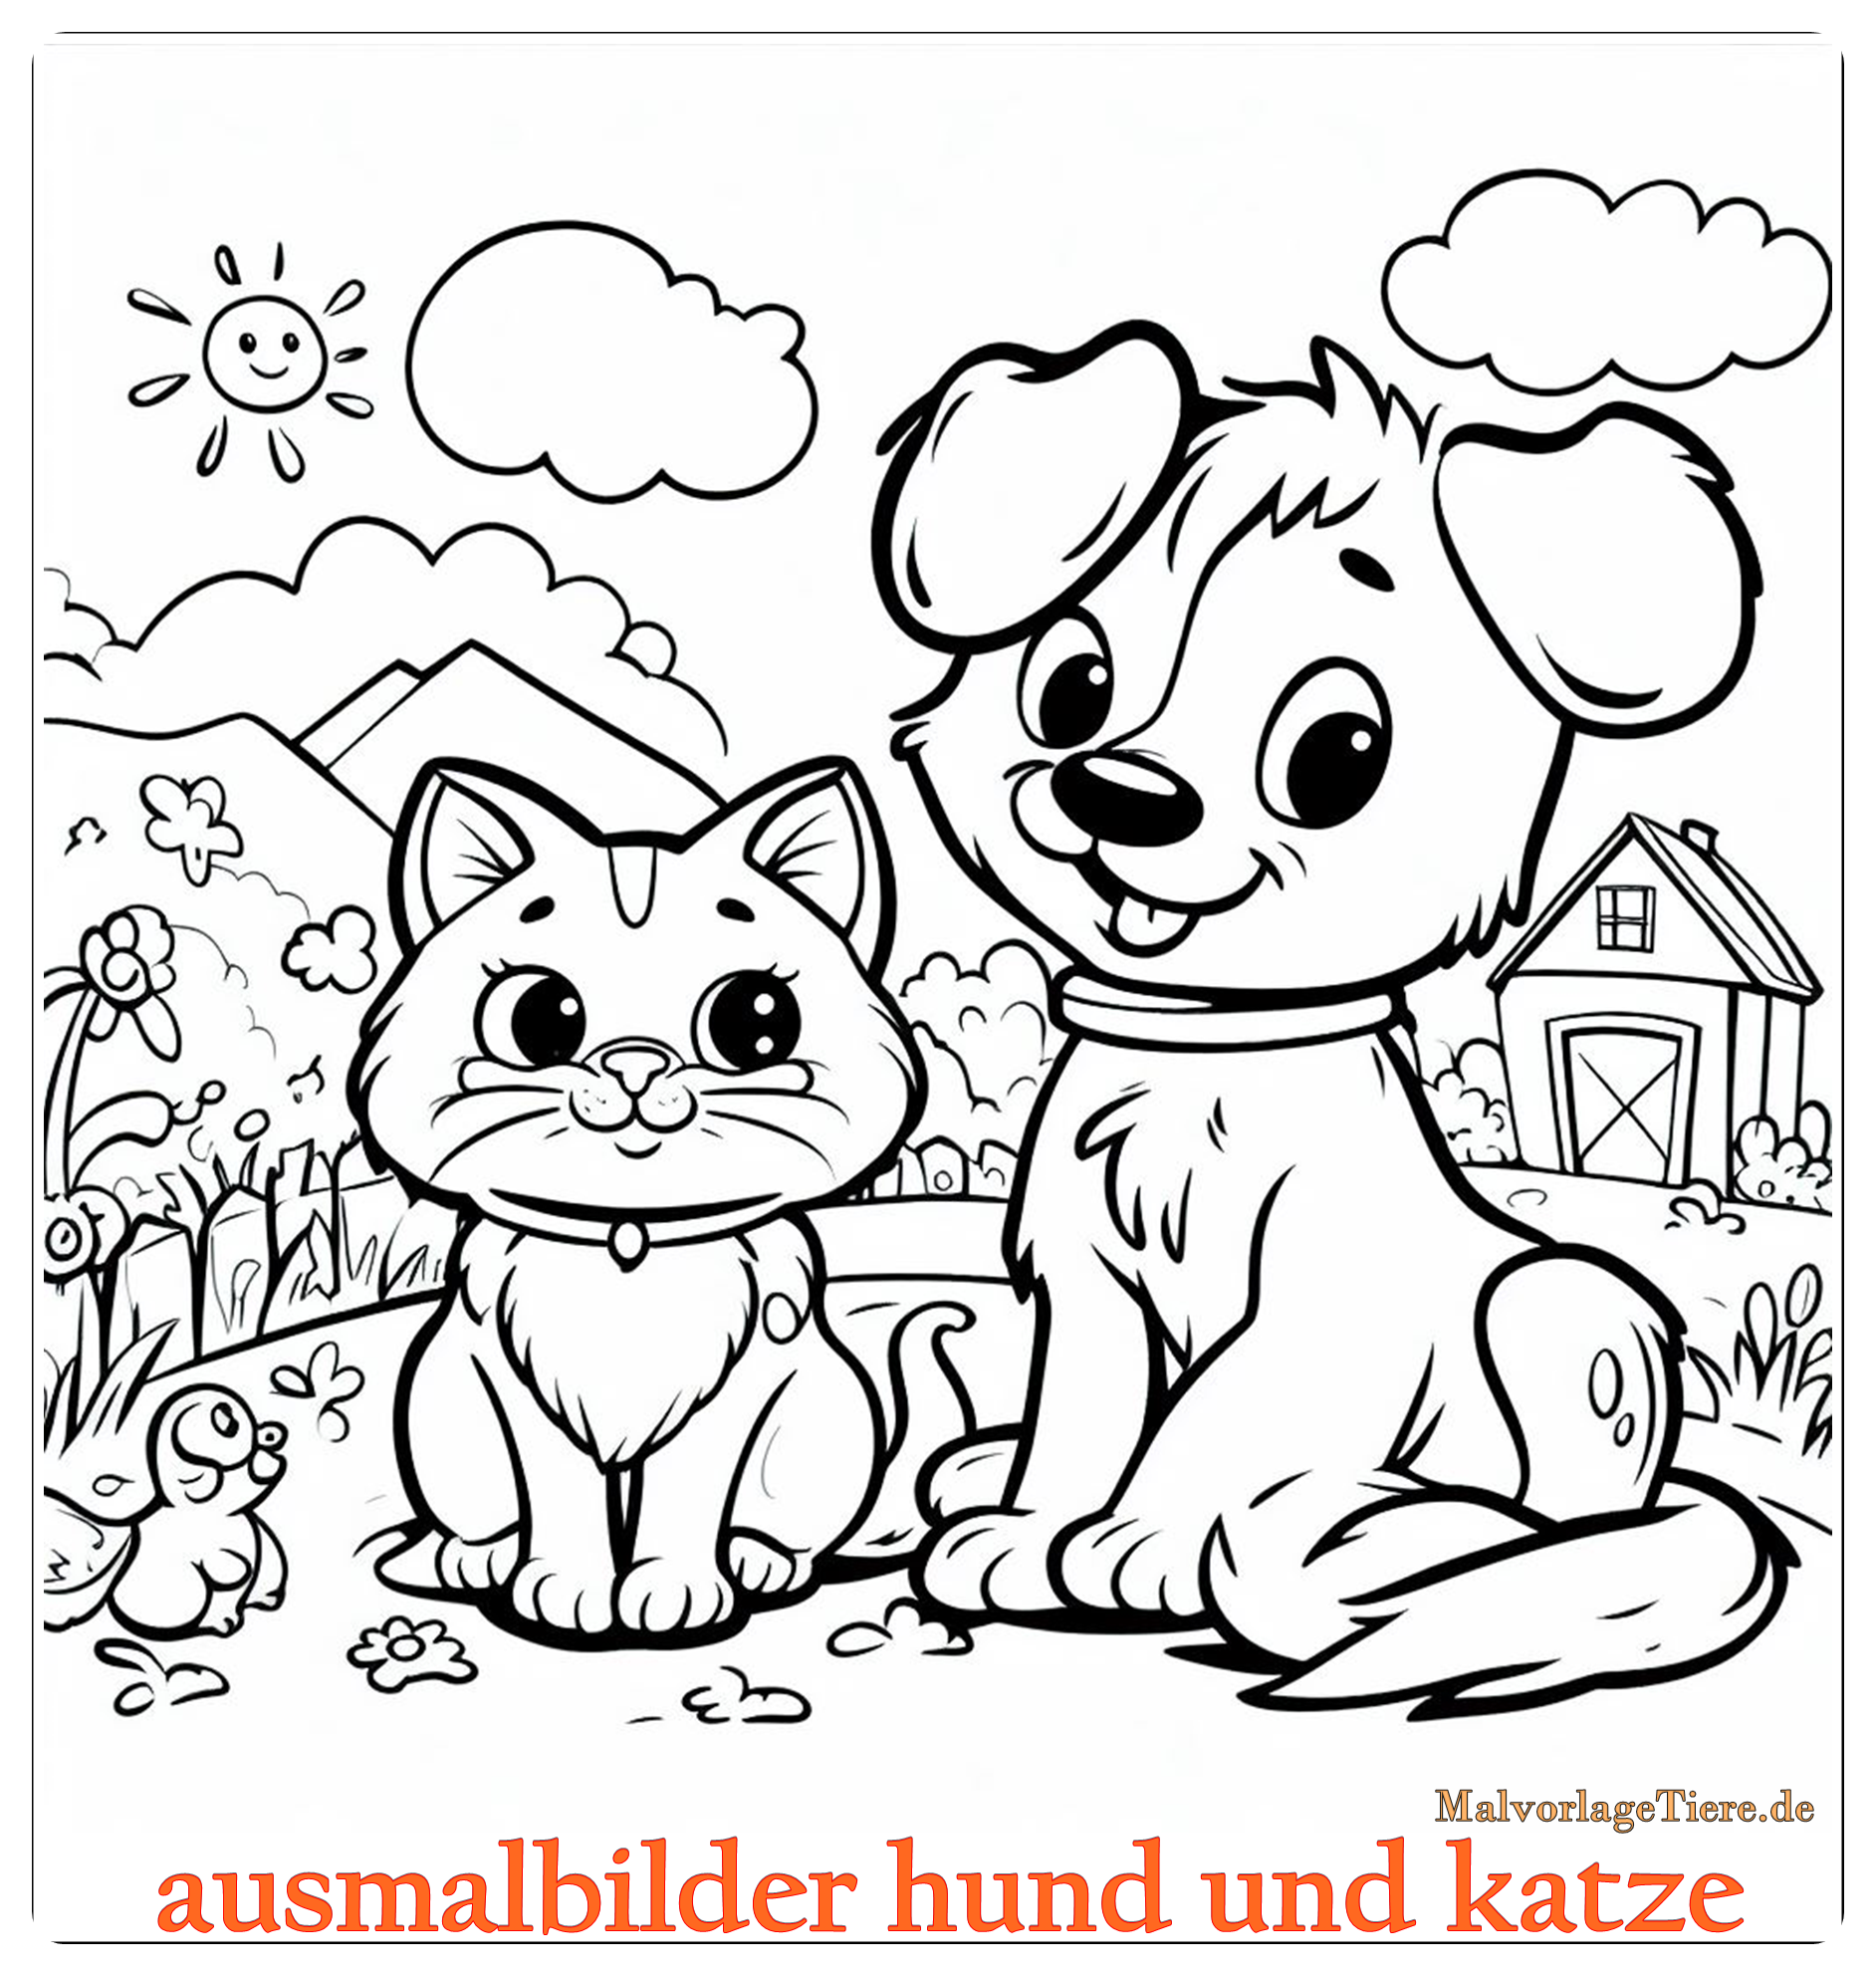 ausmalbilder hund und katze 08 by malvorlagetiere.de